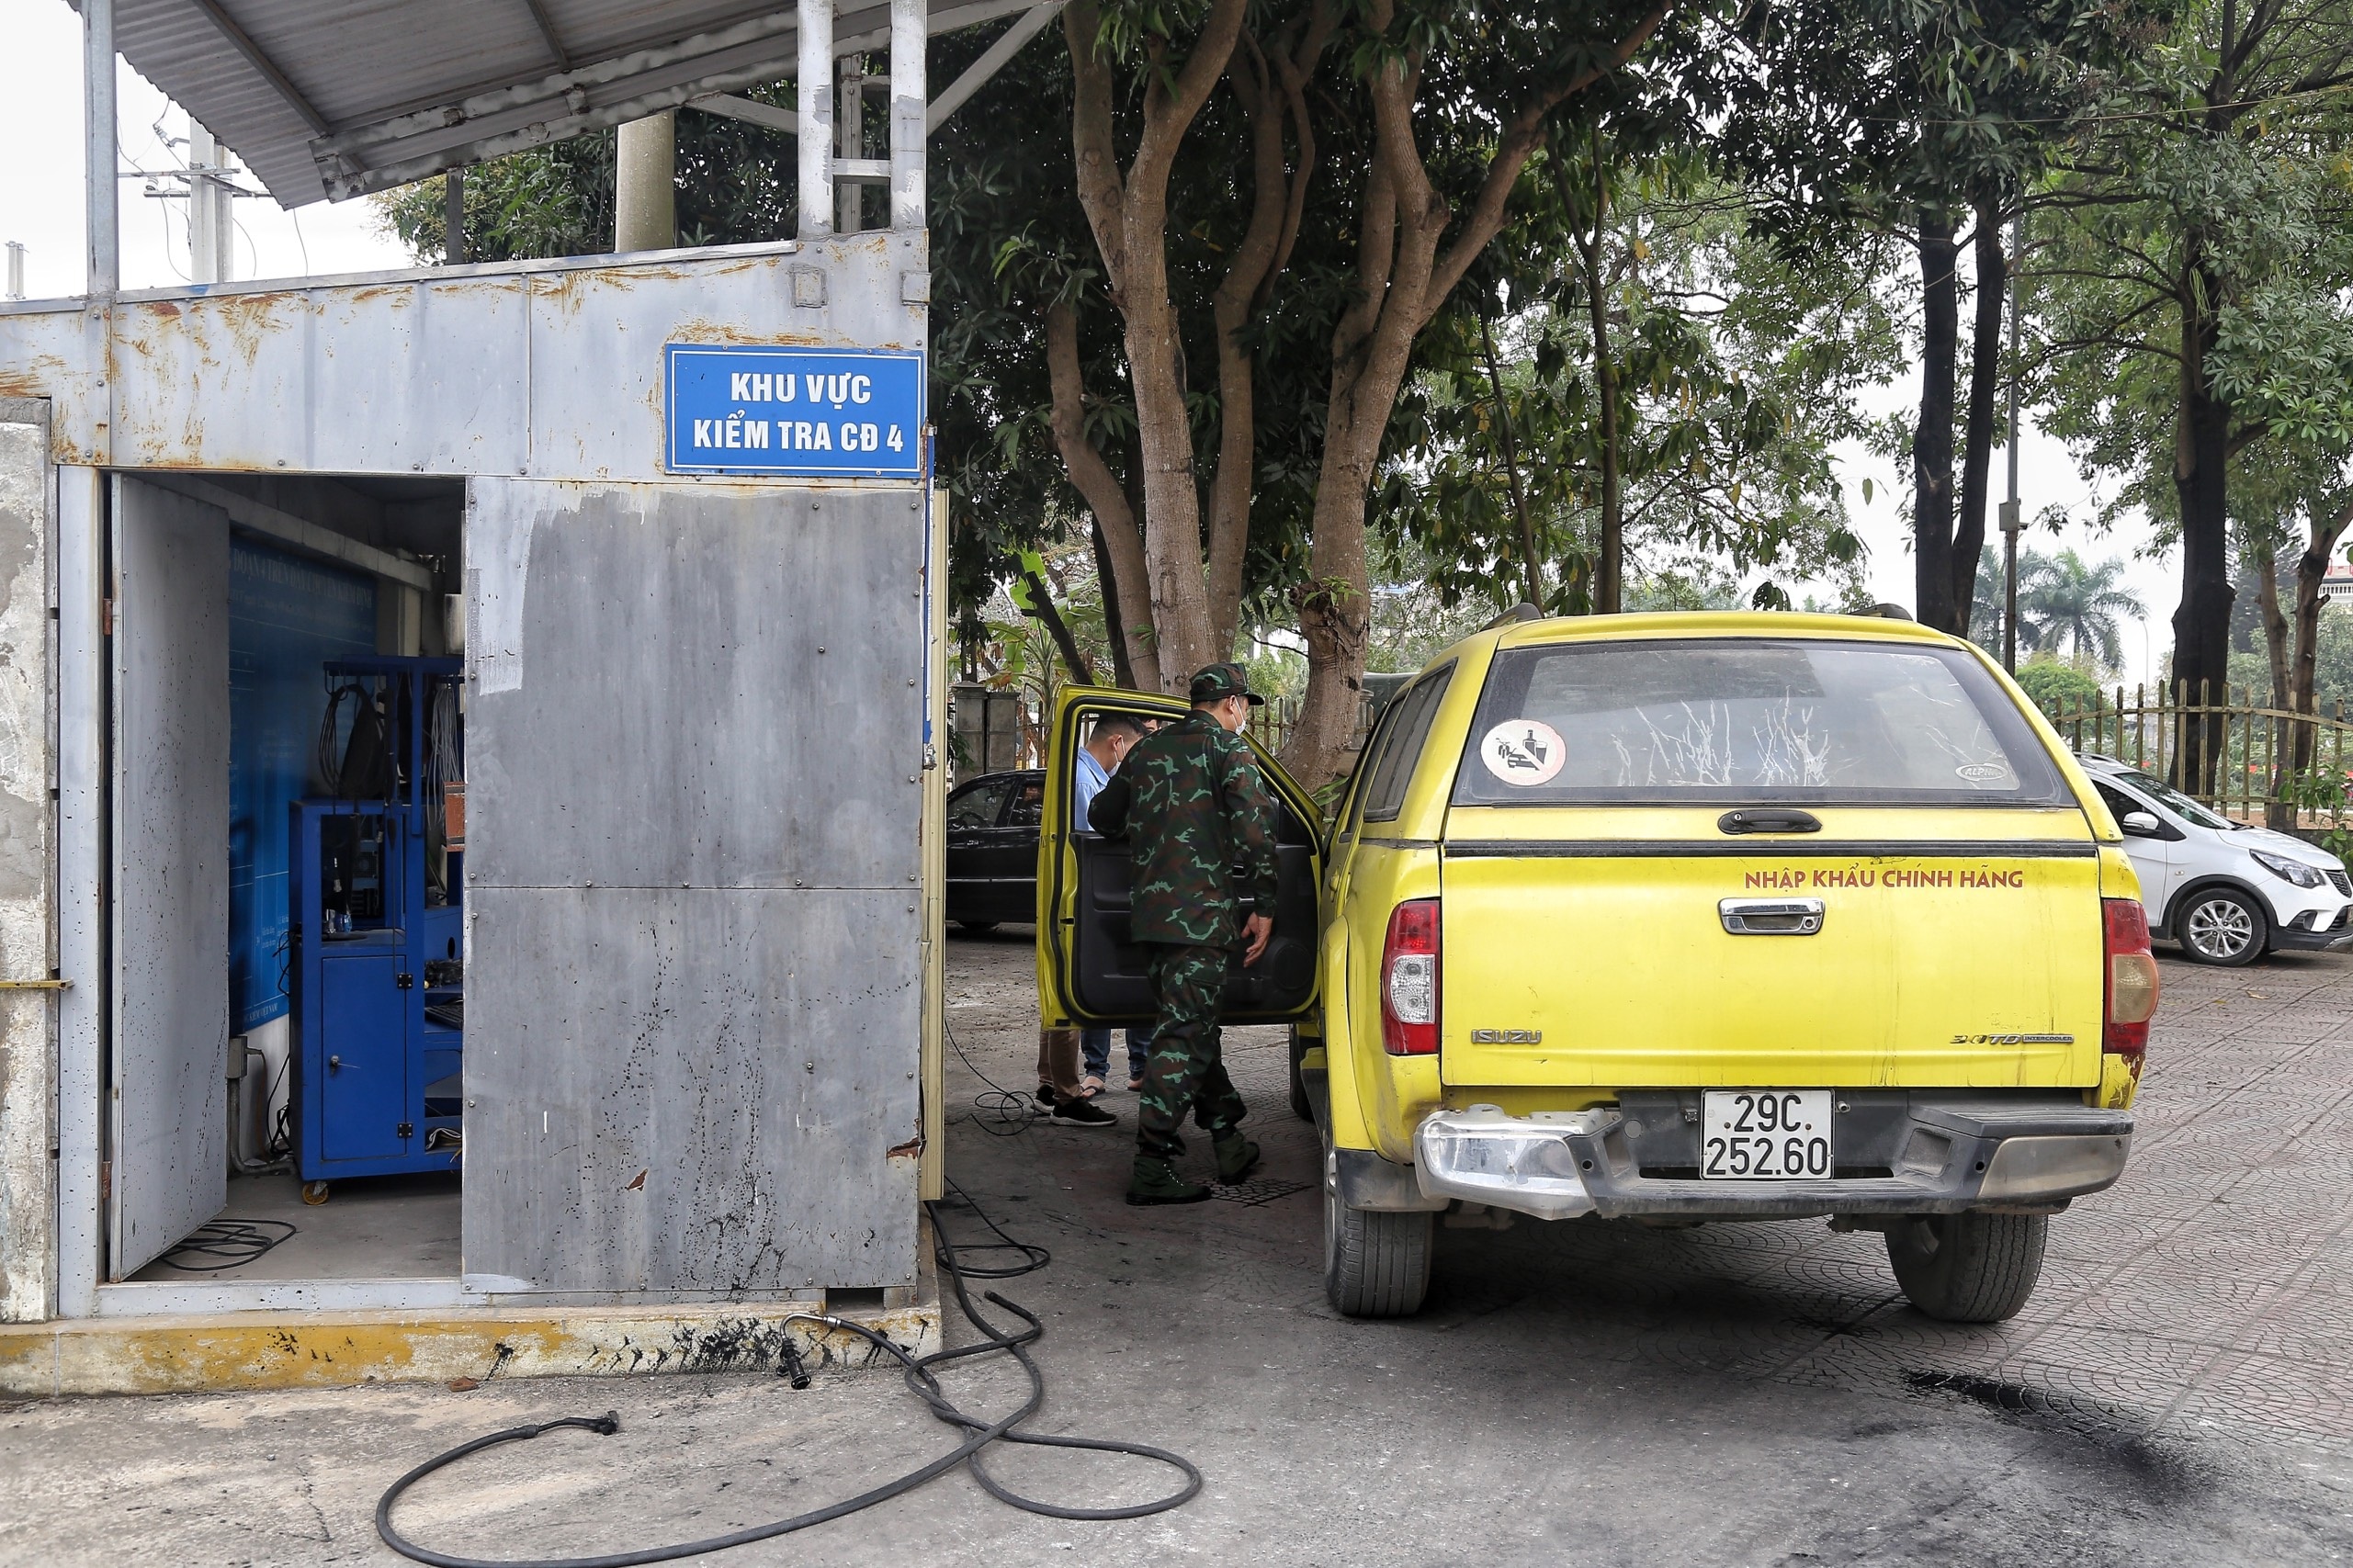 Xem kiểm định viên quân sự hỗ trợ trung tâm đăng kiểm xe cơ giới ở Hà Nội - 12